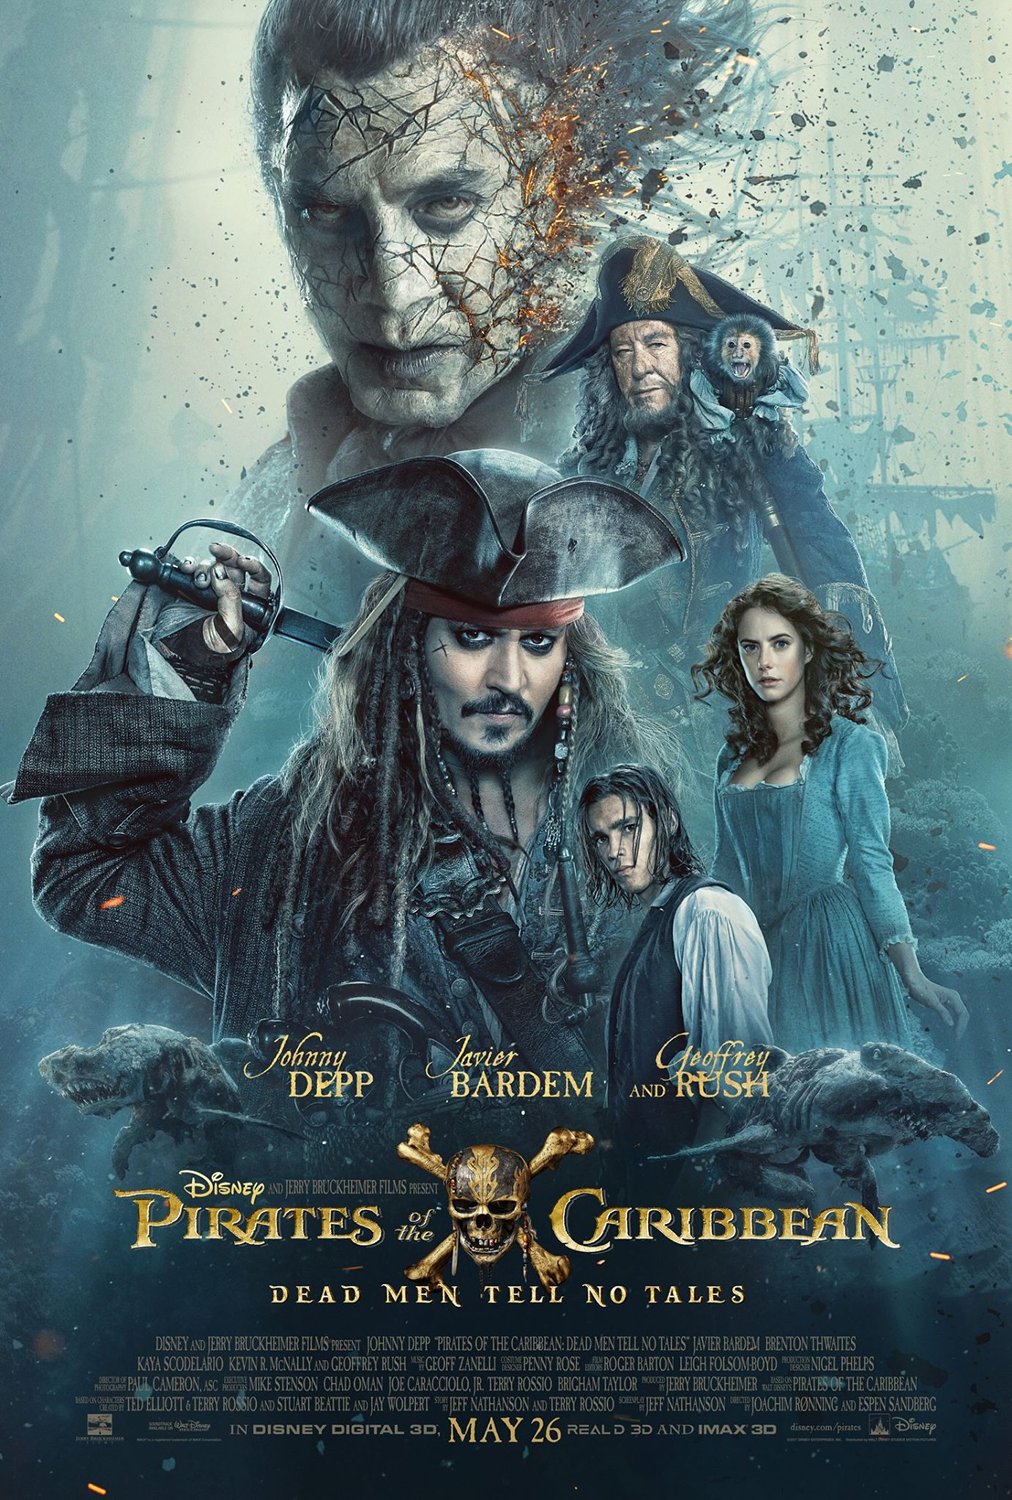 Piratas del Caribe: La venganza de Salazar (Pirates of the Caribbean: Dead men tell no tales) [2017]